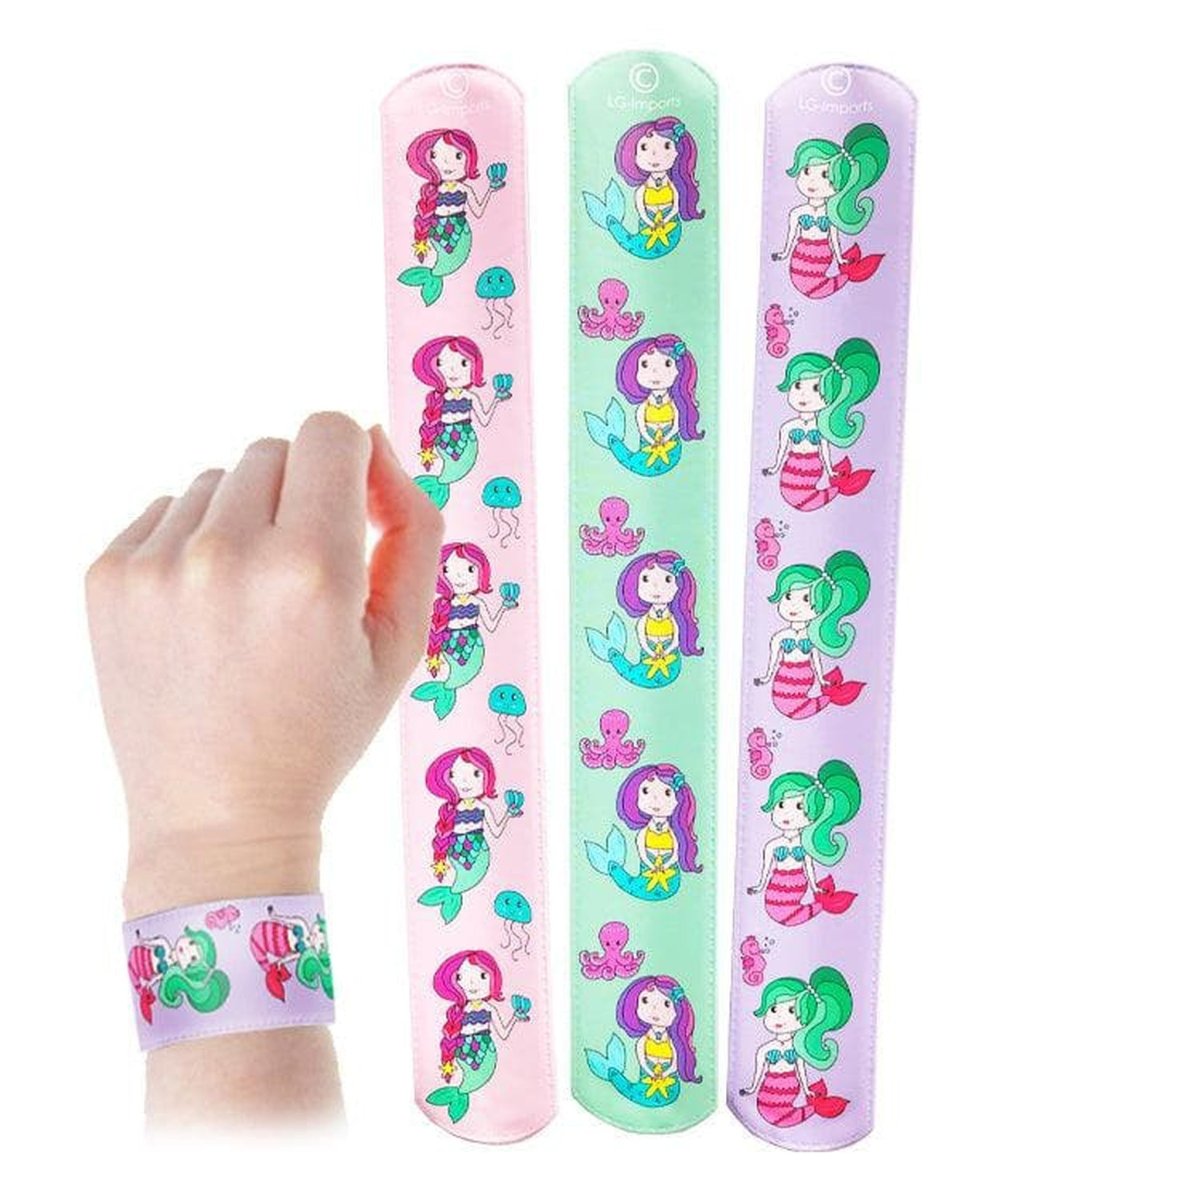 Mermaid Slap Bracelet - Kids Party Craft